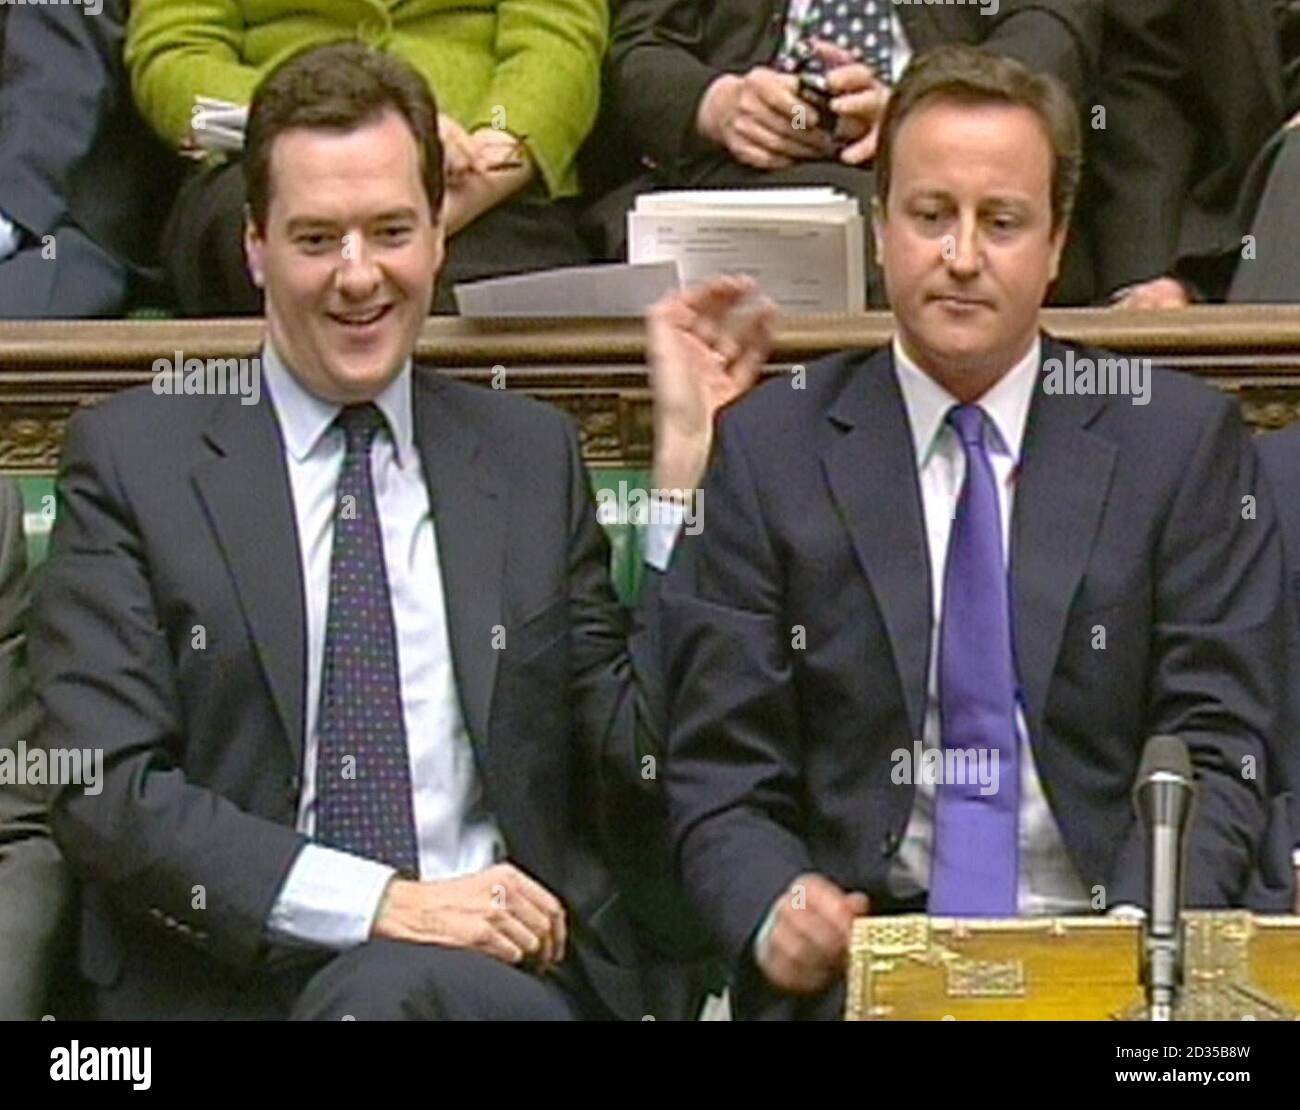 Oppositionsführer David Cameron sitzt neben dem Schattenkanzler George Osborne, nachdem er auf die Rede des Schatzkanzlers Alistair Darling im Unterhaus geantwortet hat. Stockfoto